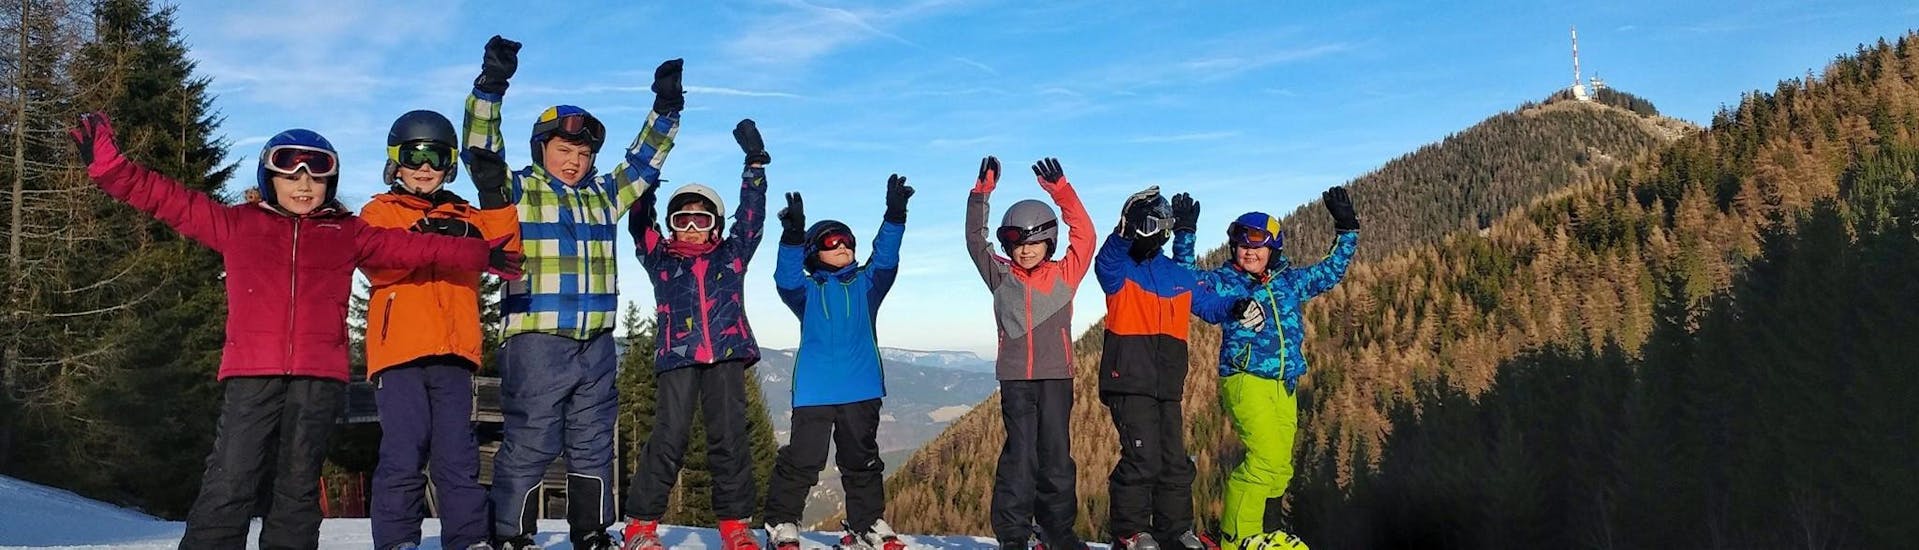 Skilessen voor kinderen vanaf 5 jaar - ervaren.